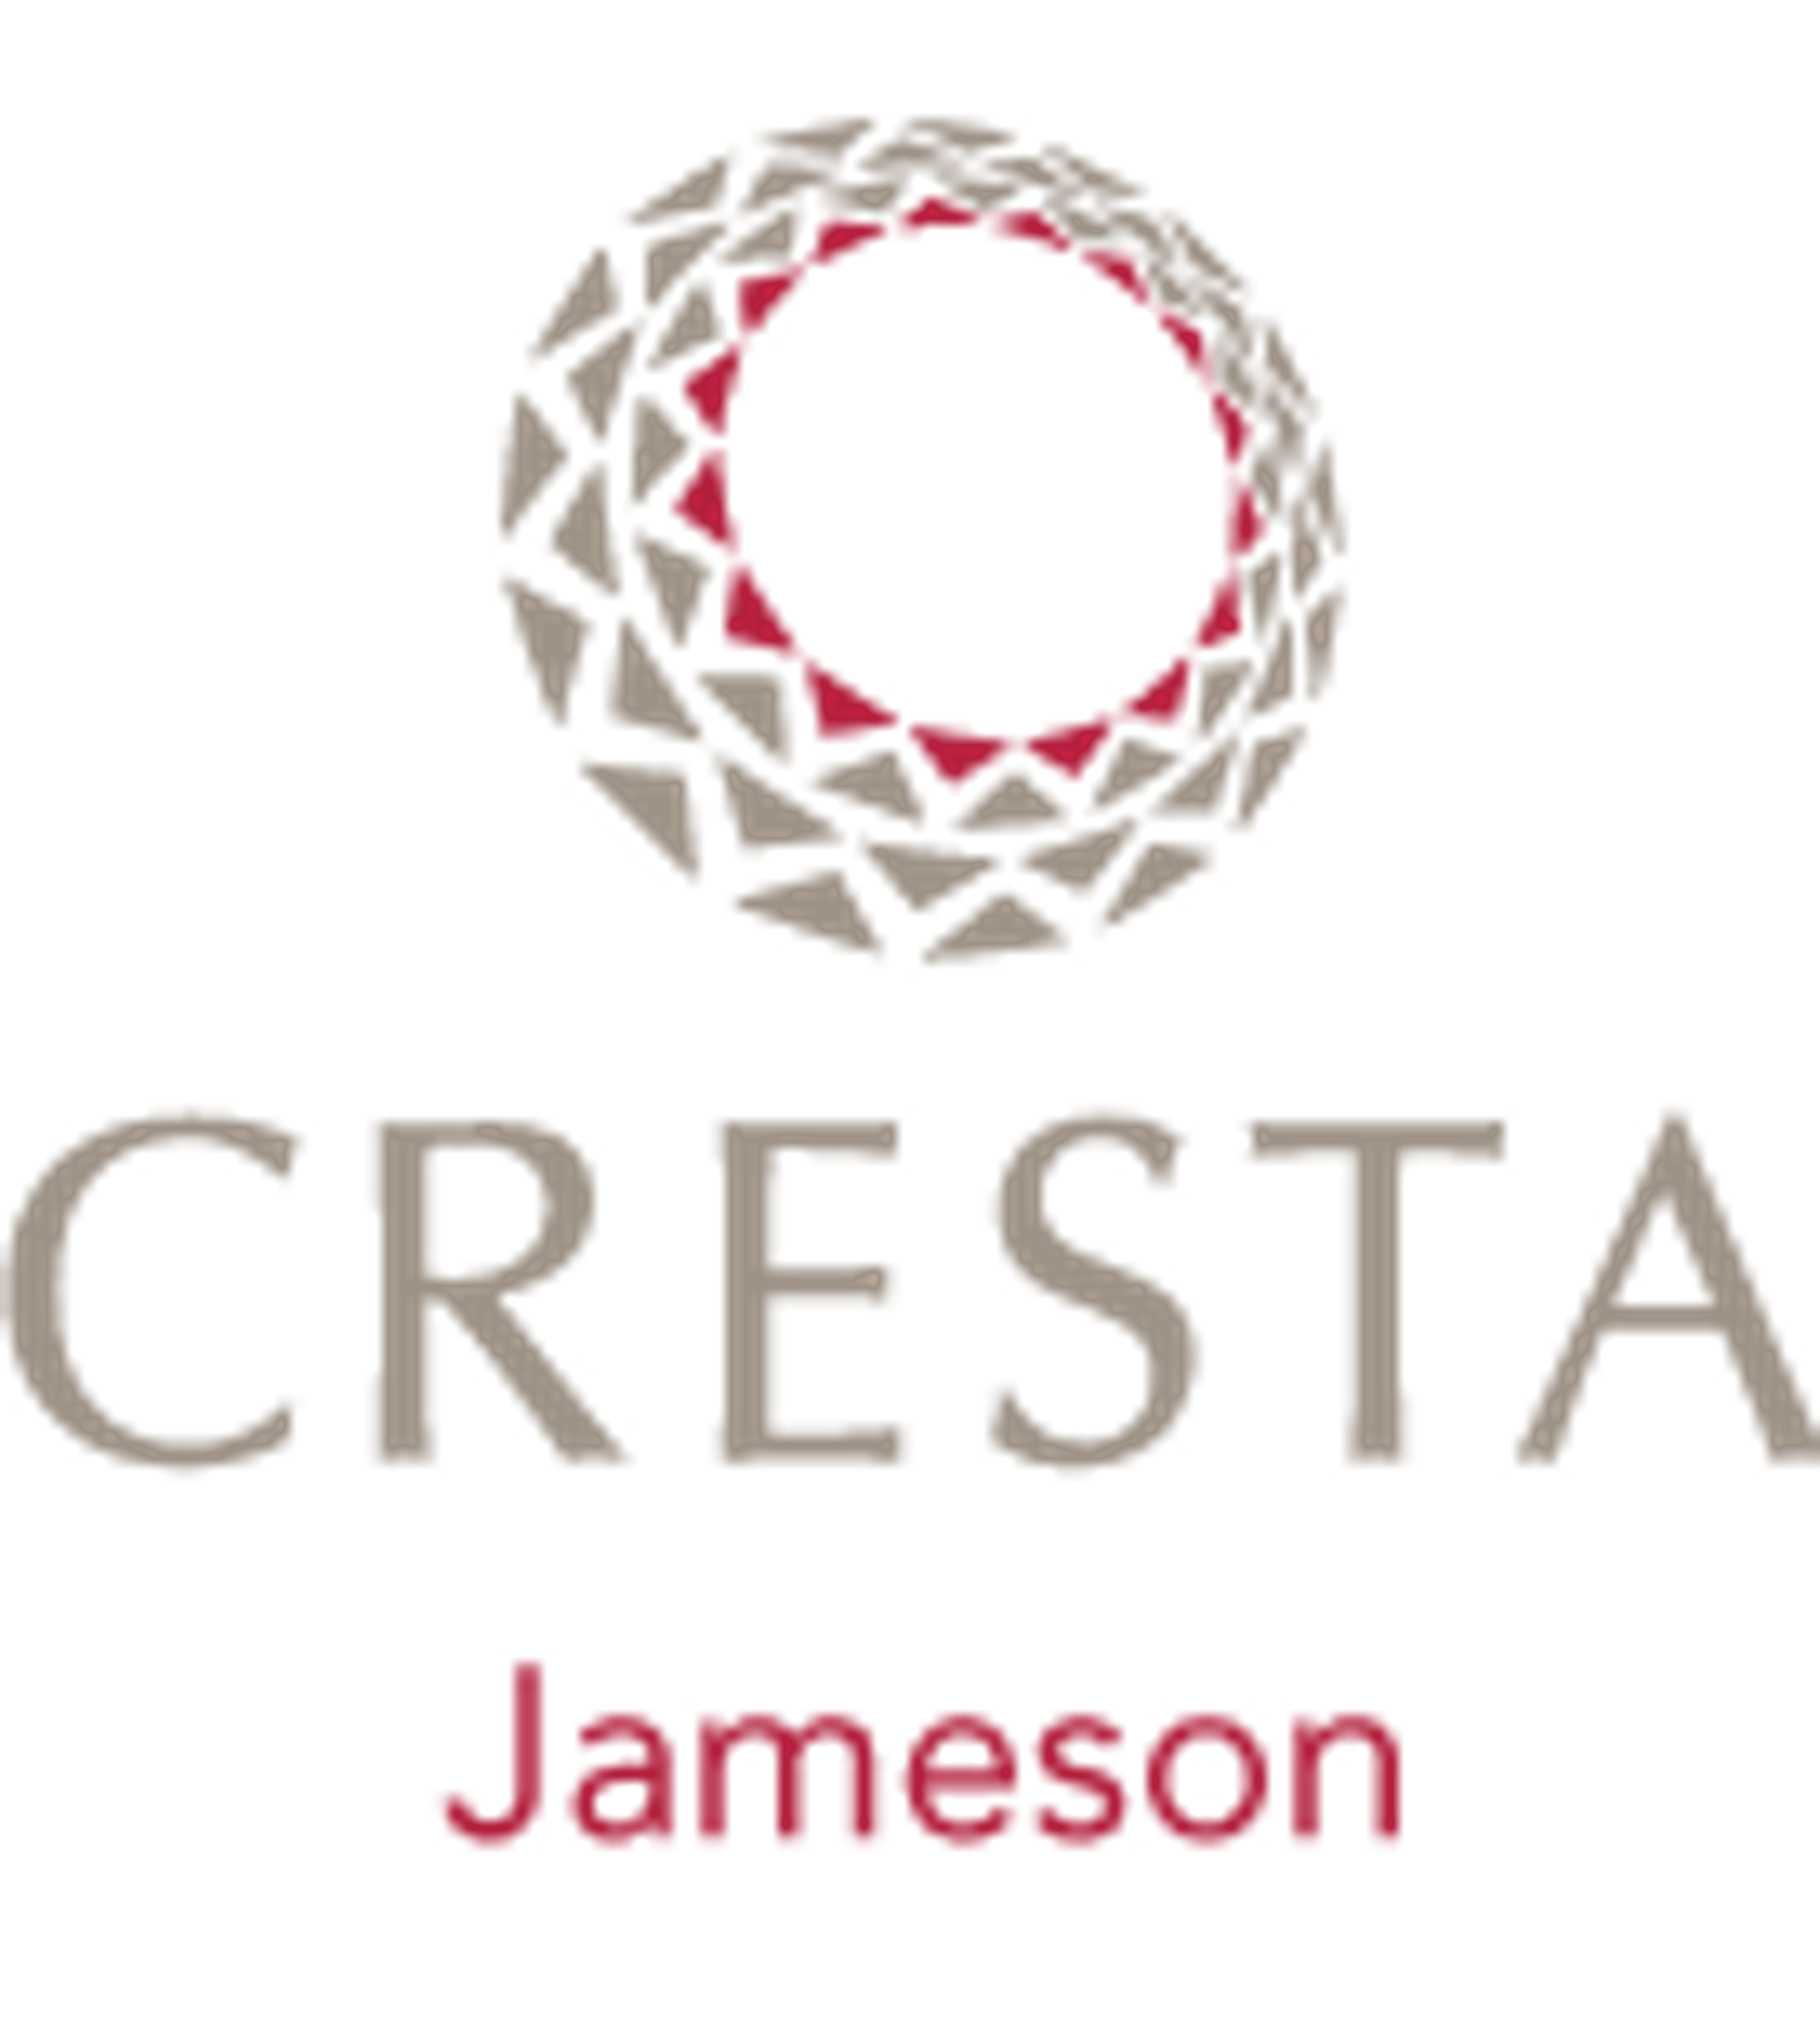 Small Logos For Cresta Jameson